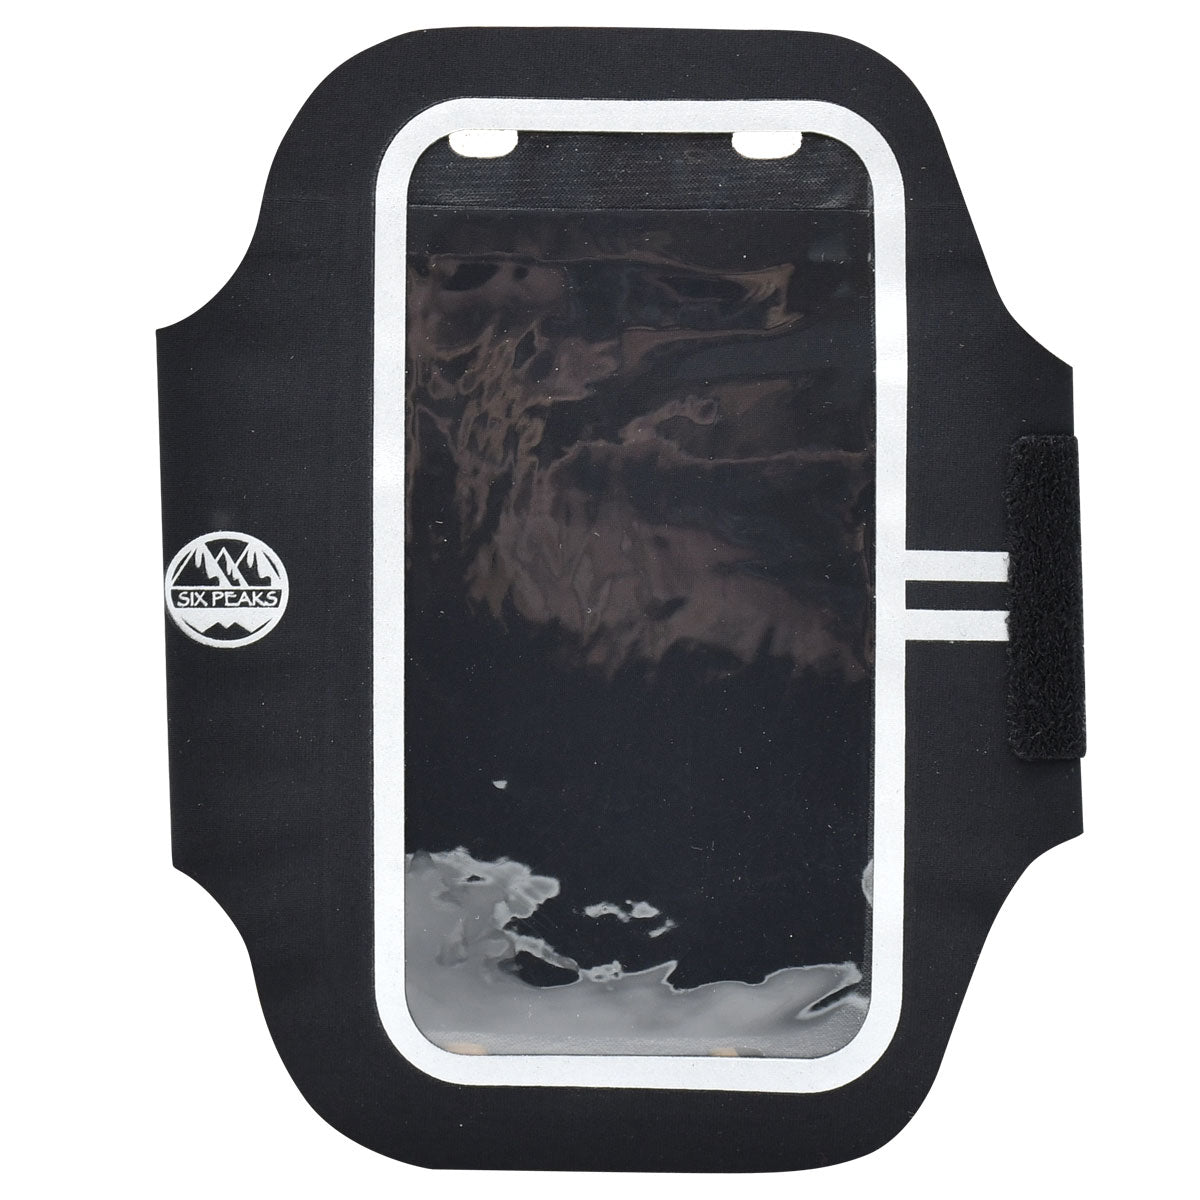 Six Peaks Armband Phone Holder - Black